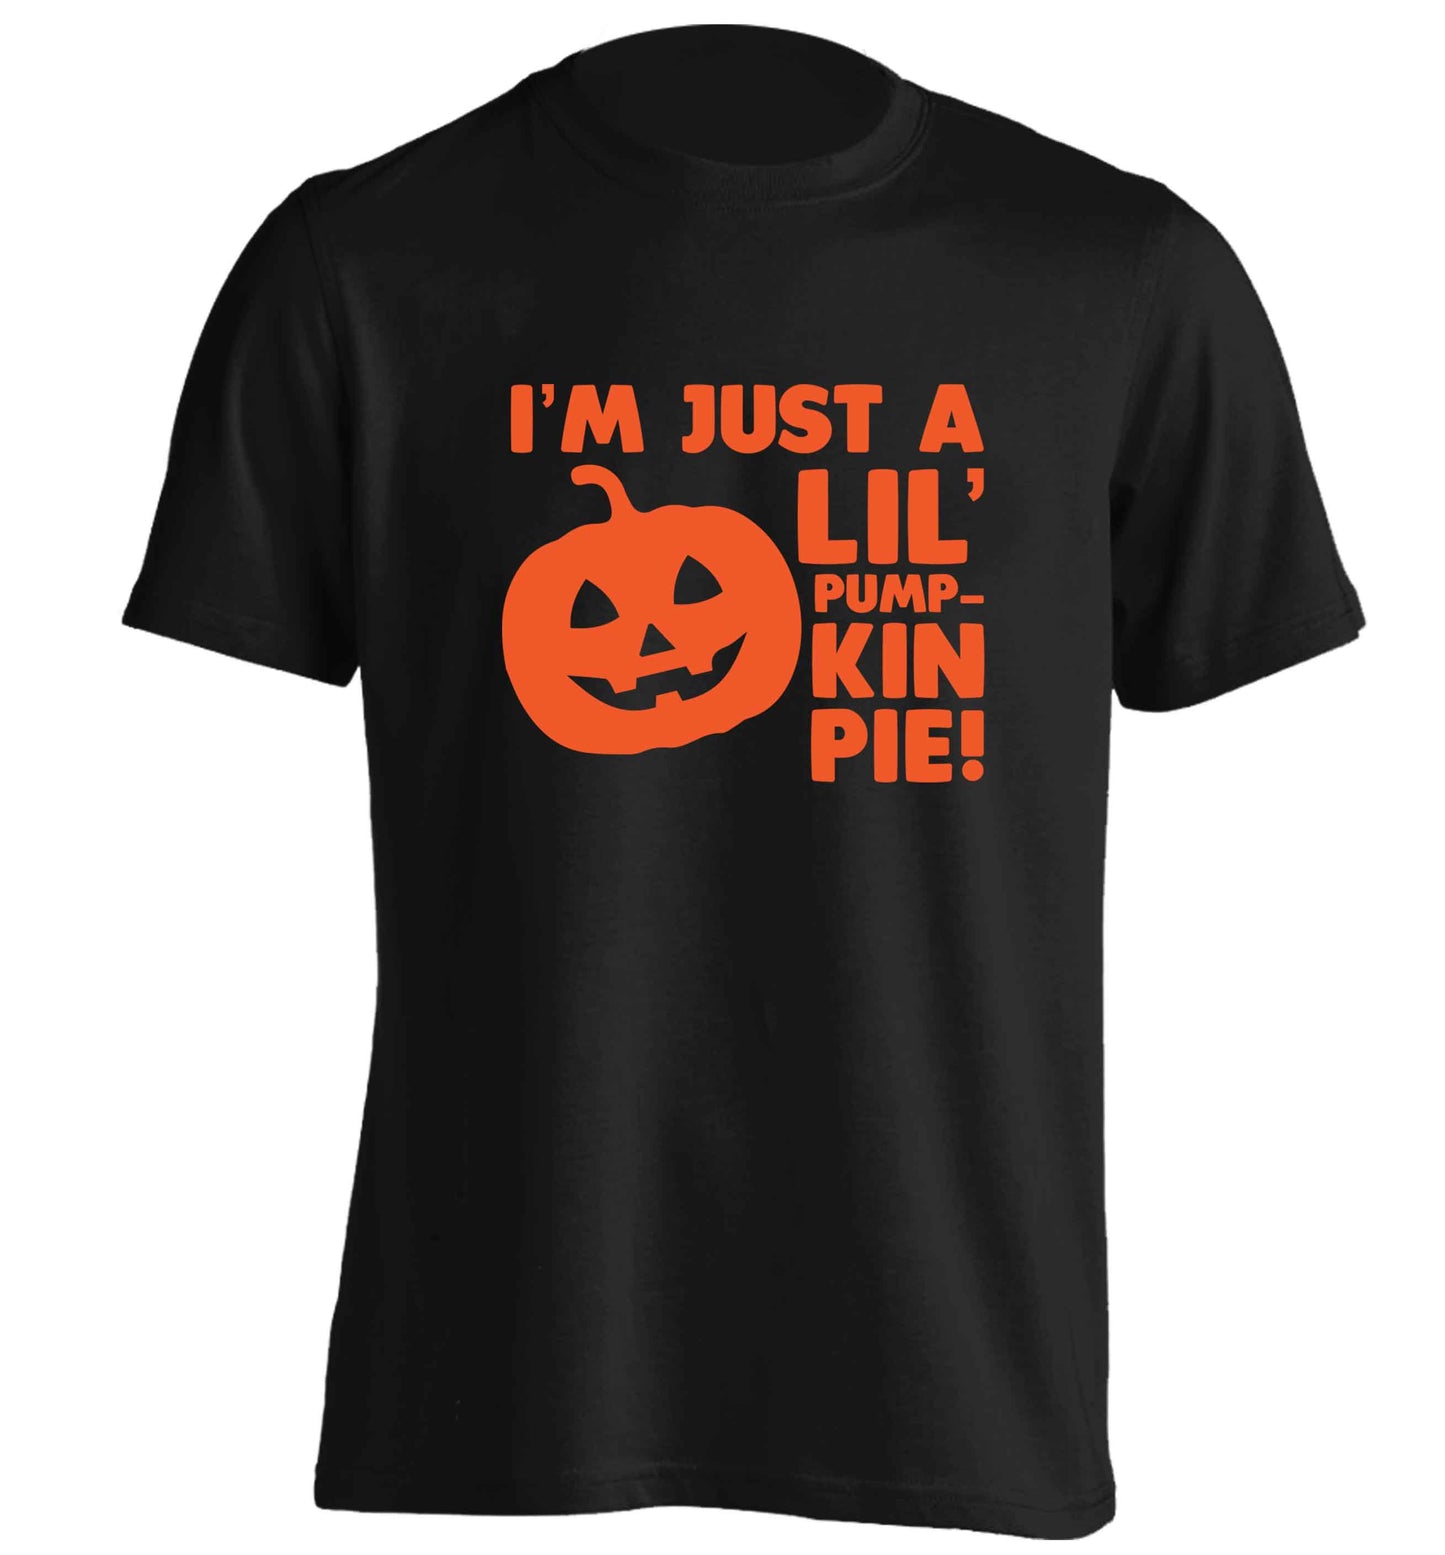 I'm just a lil' pumpkin pie adults unisex black Tshirt 2XL